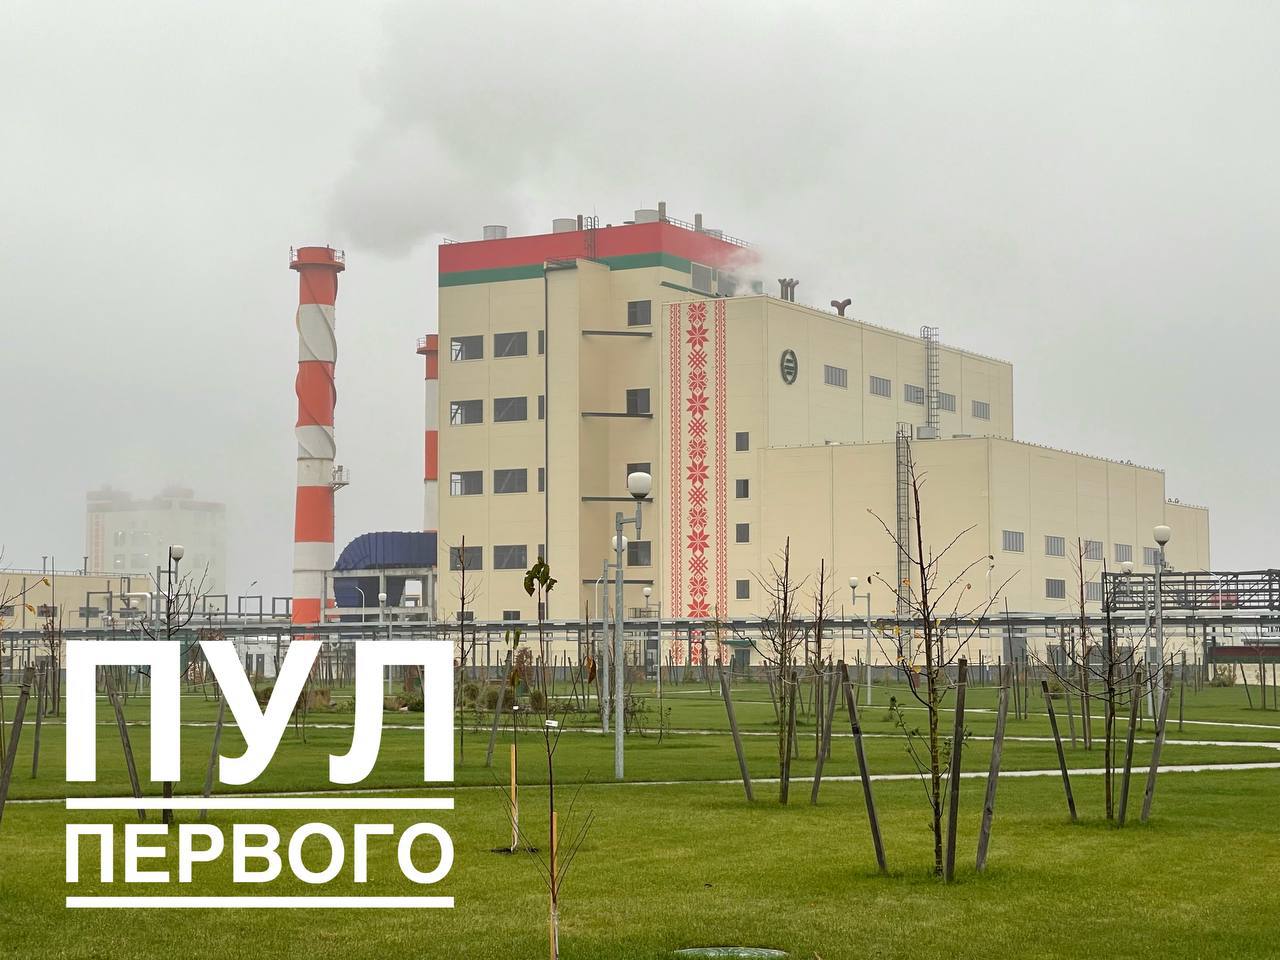 Лукашенко открывает новый завод - узнали что он производит